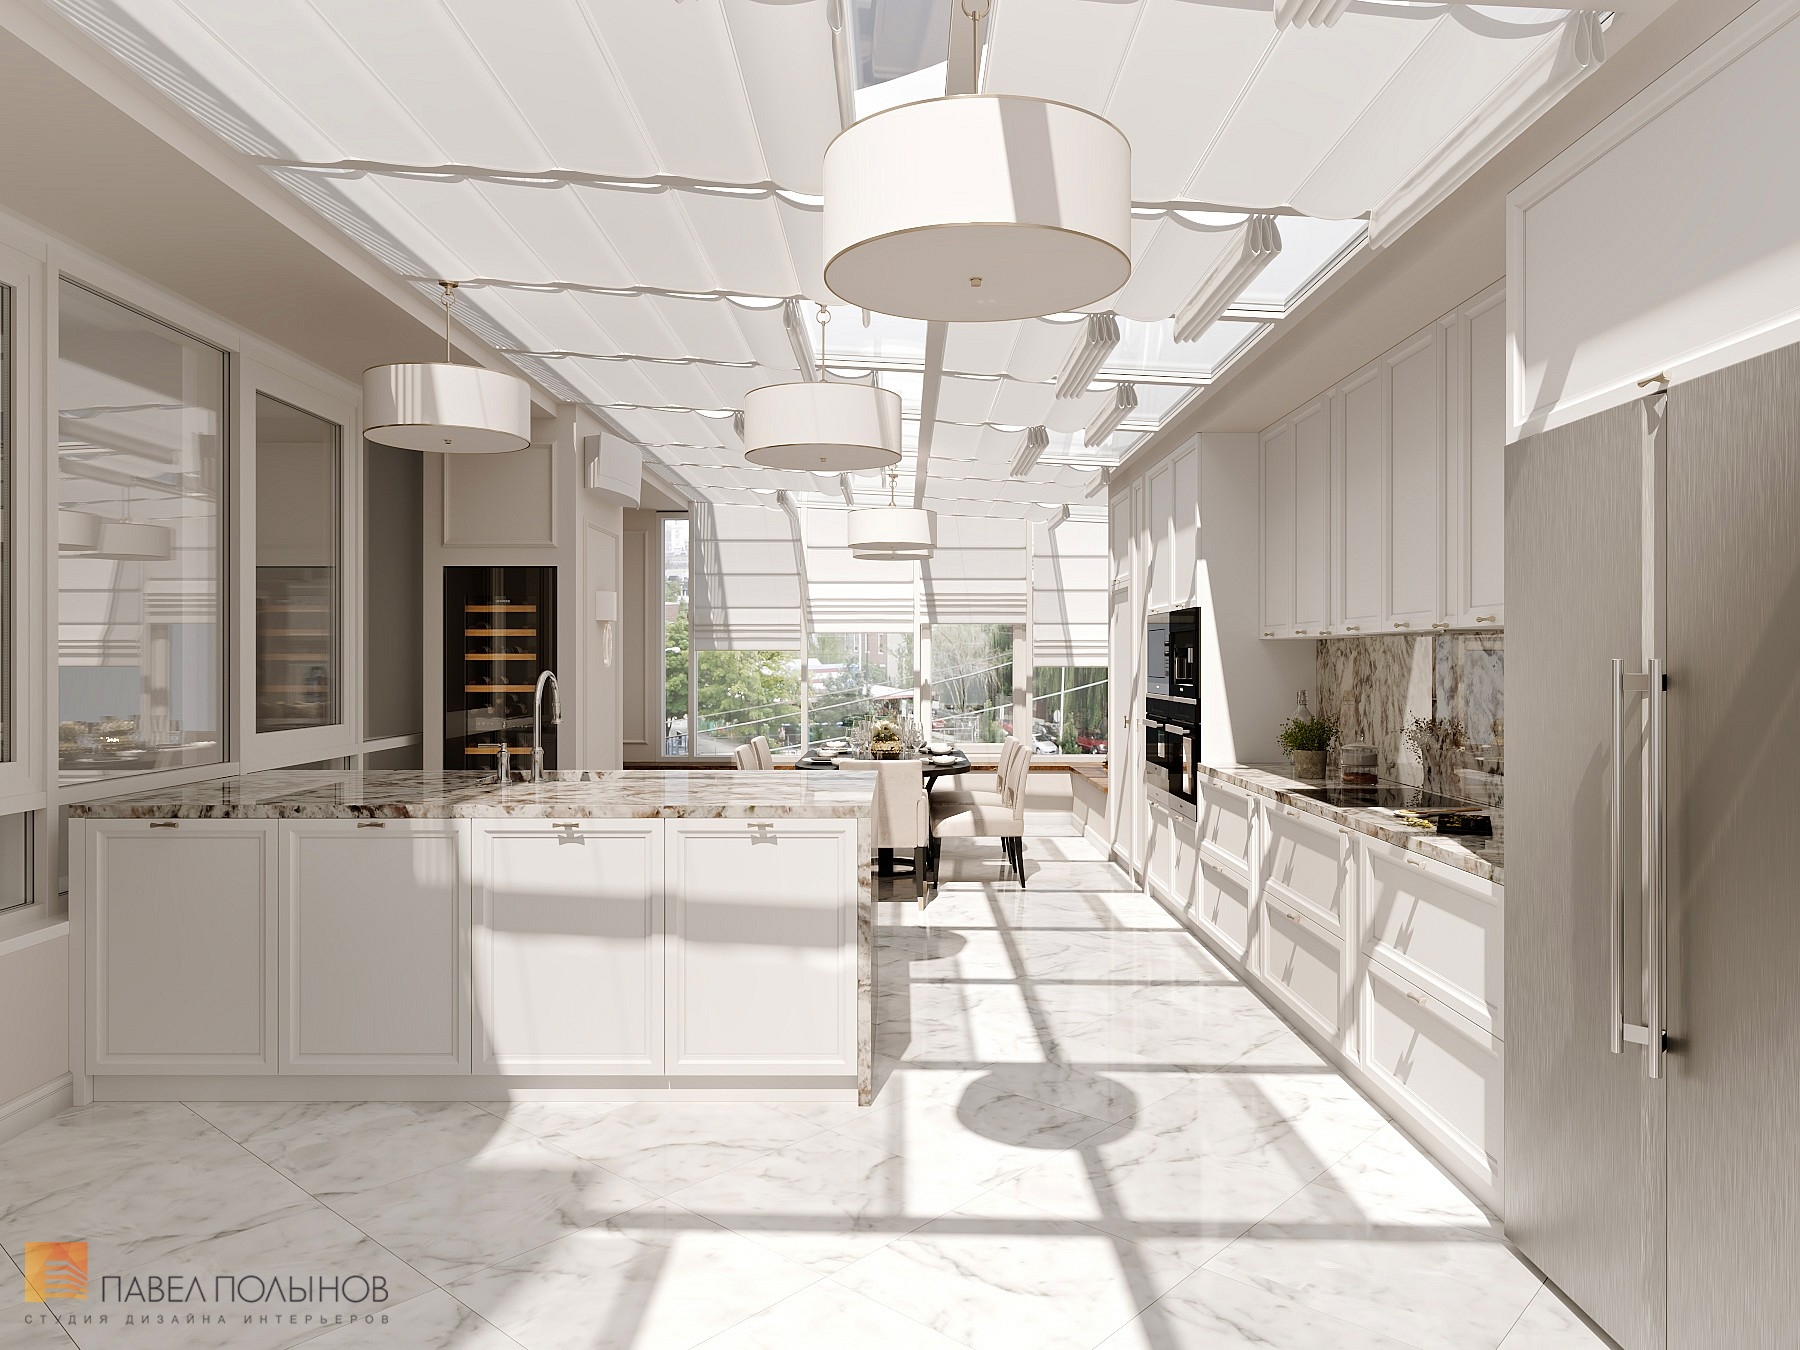 Фото кухня из проекта «Интерьер квартиры 200 кв.м. в стиле Ар-деко, ЖК «Граф Орлов»»